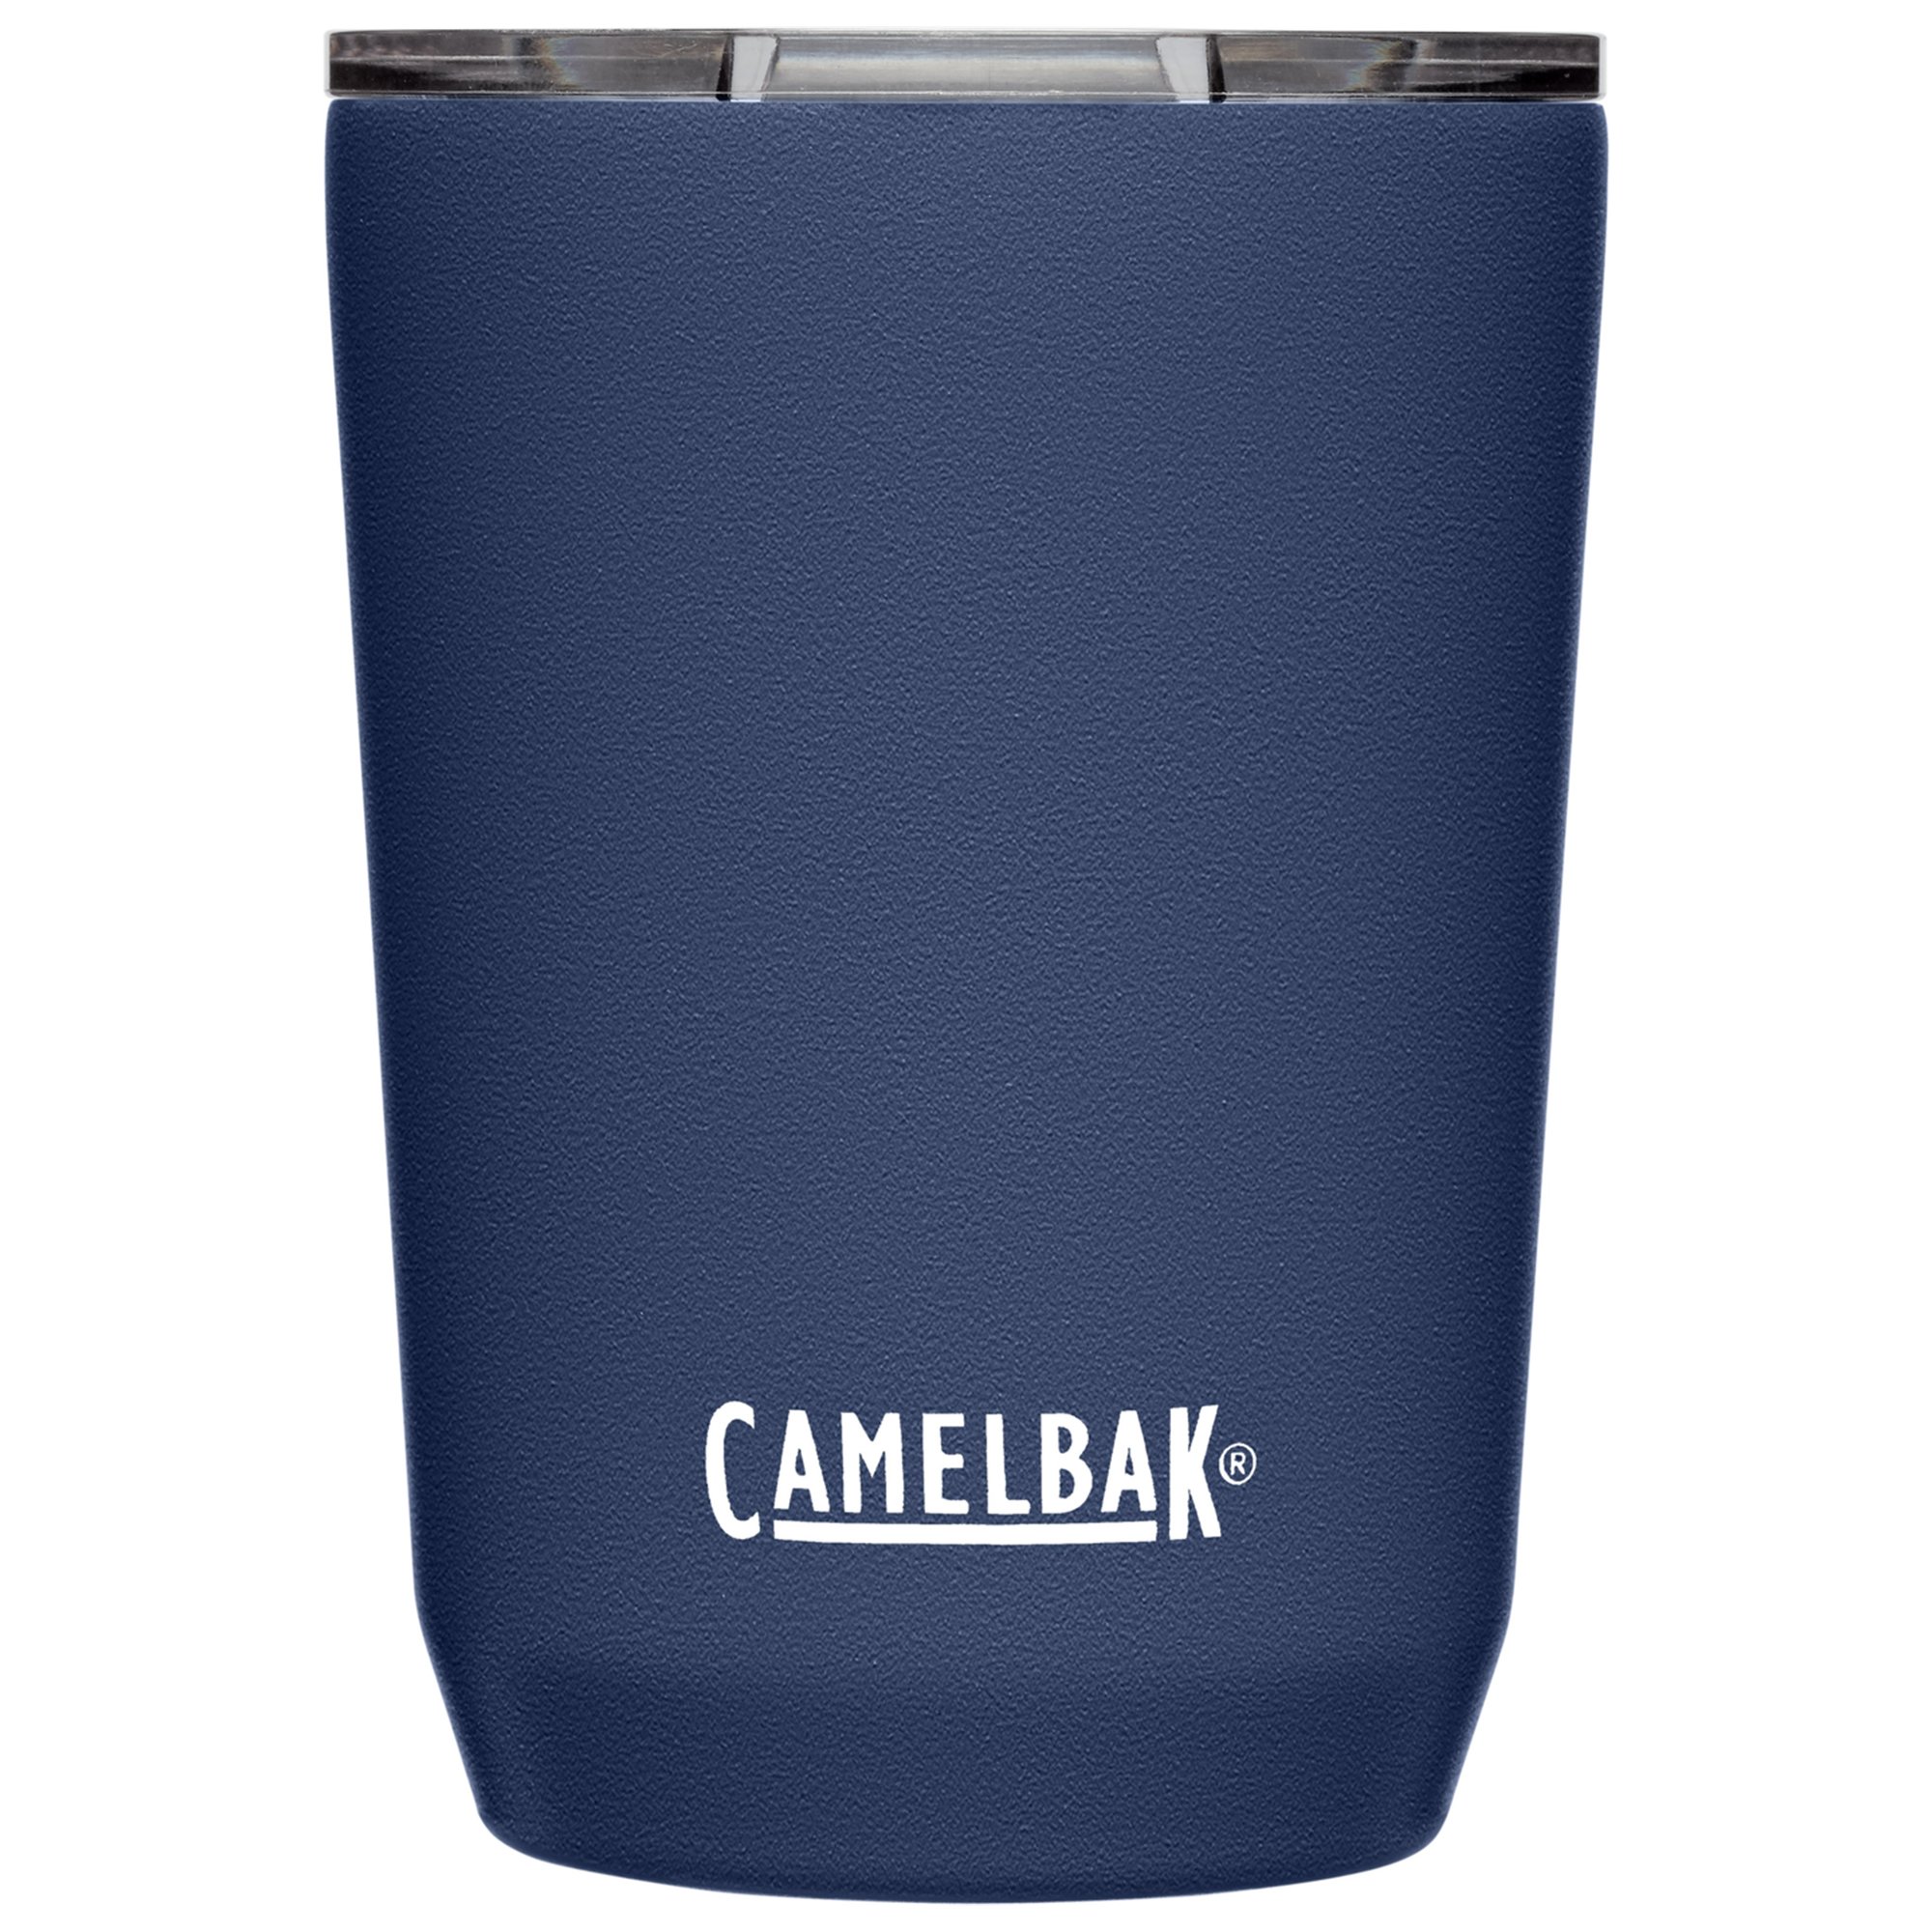 Camelbak Tumbler termosmugg 0,35 liter navy